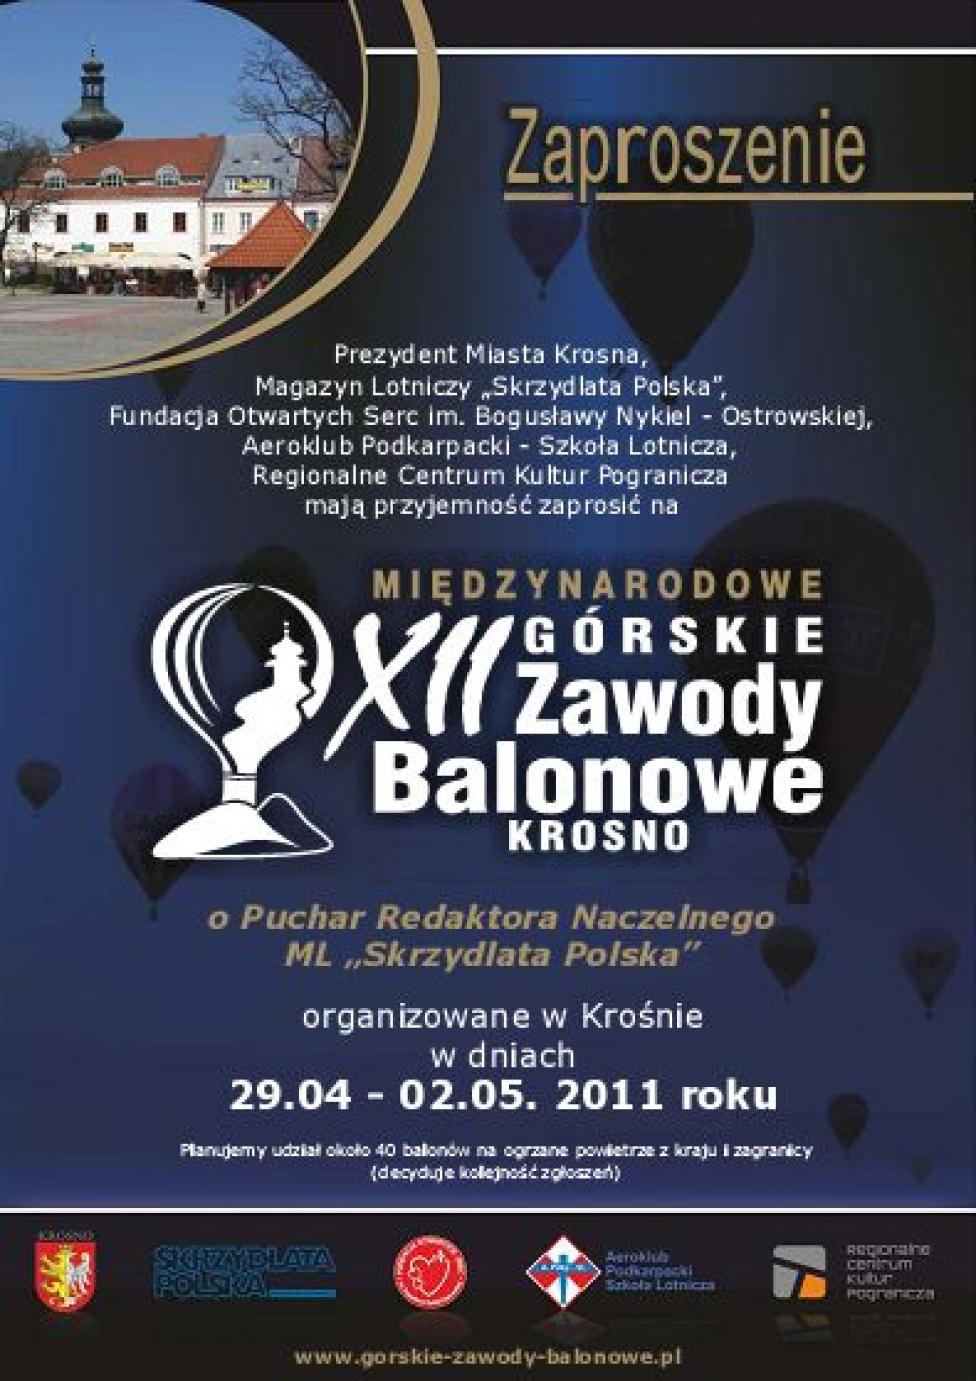 XII Górskie Zawody Balonowe w Krośnie (zaproszenie)